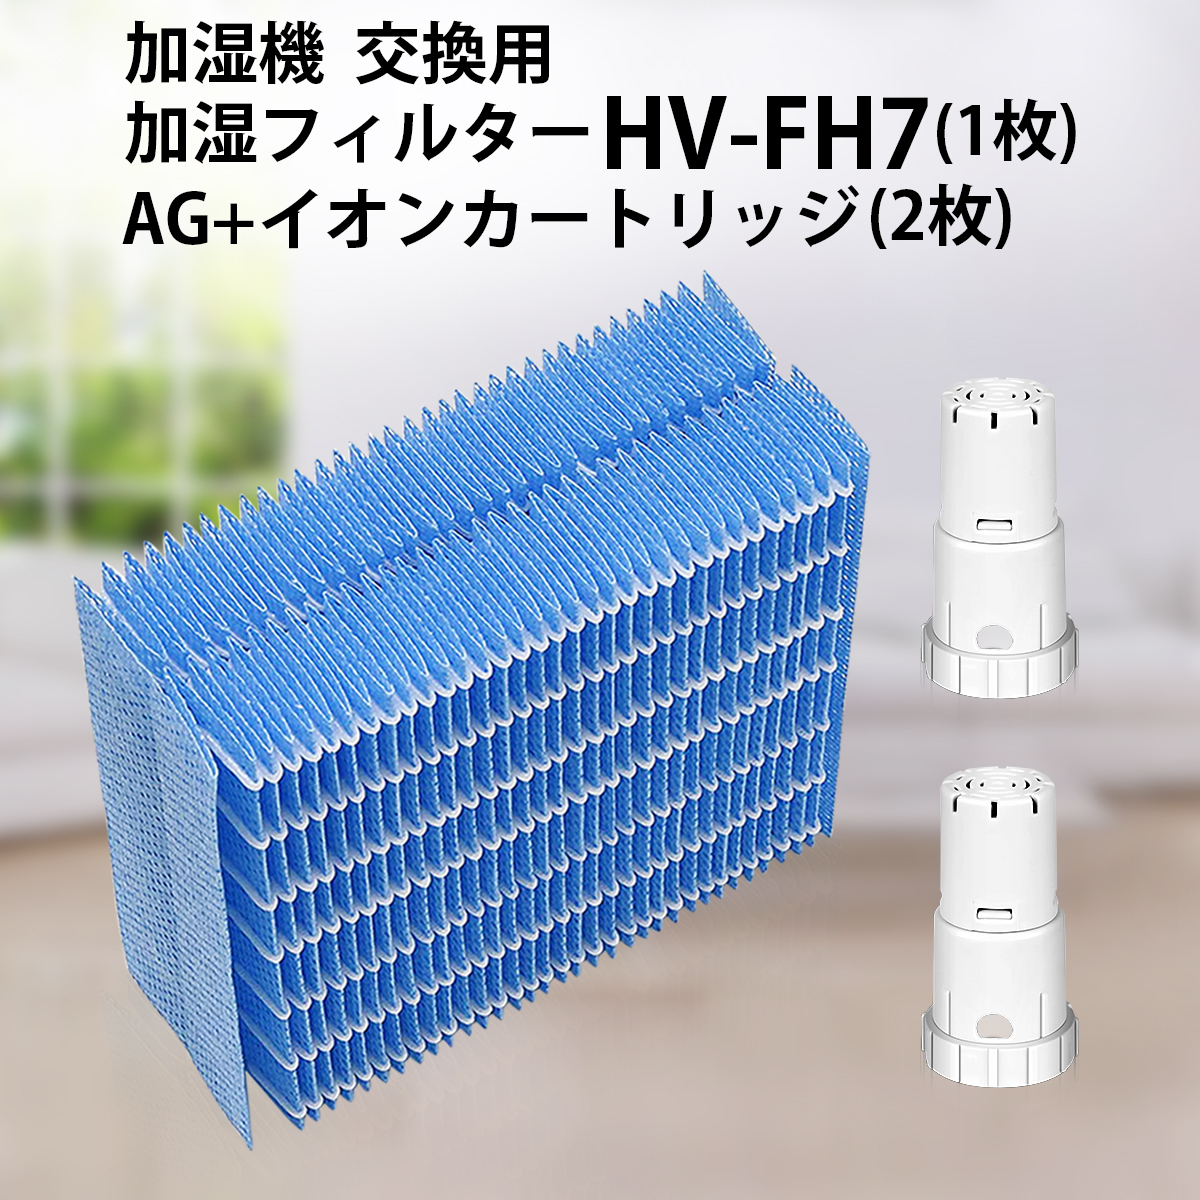 MR:加湿器フィルター HV-FY5 と互換性のある 交換用加湿フィルター 1枚入り